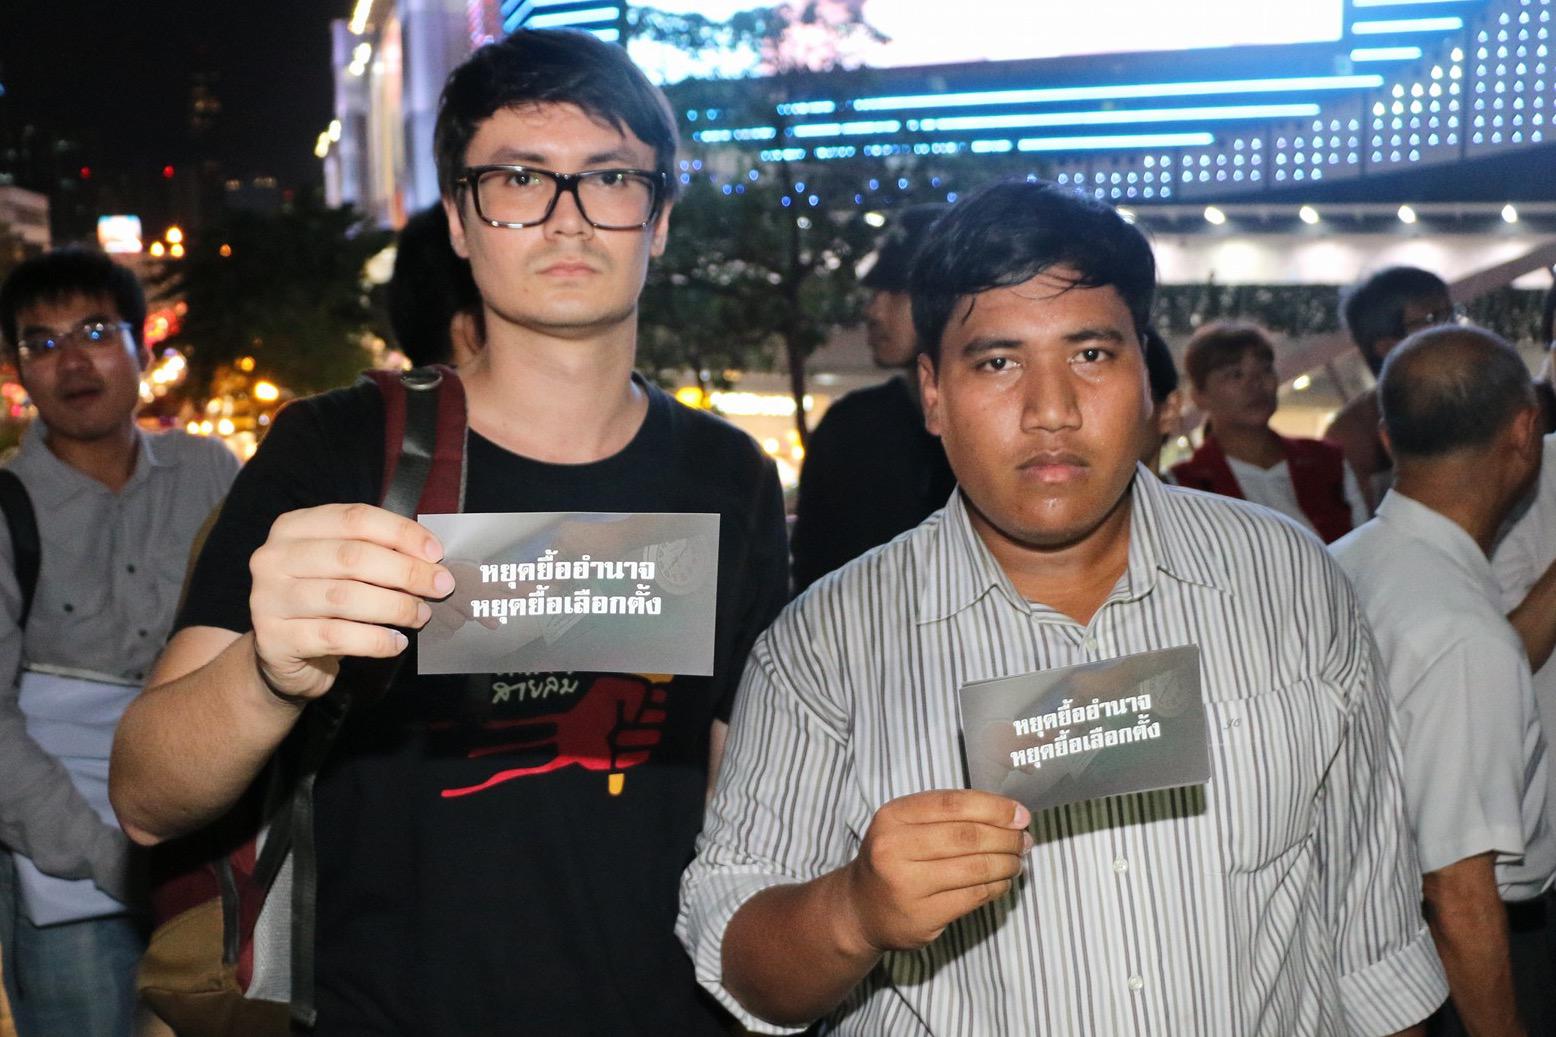 Aktivis pro-demokrasi menghadapi dakwaan penghasutan dan pertemuan ilegal karena turut serta dalam demonstrasi damai menentang pemerintahan militer di Thailand.